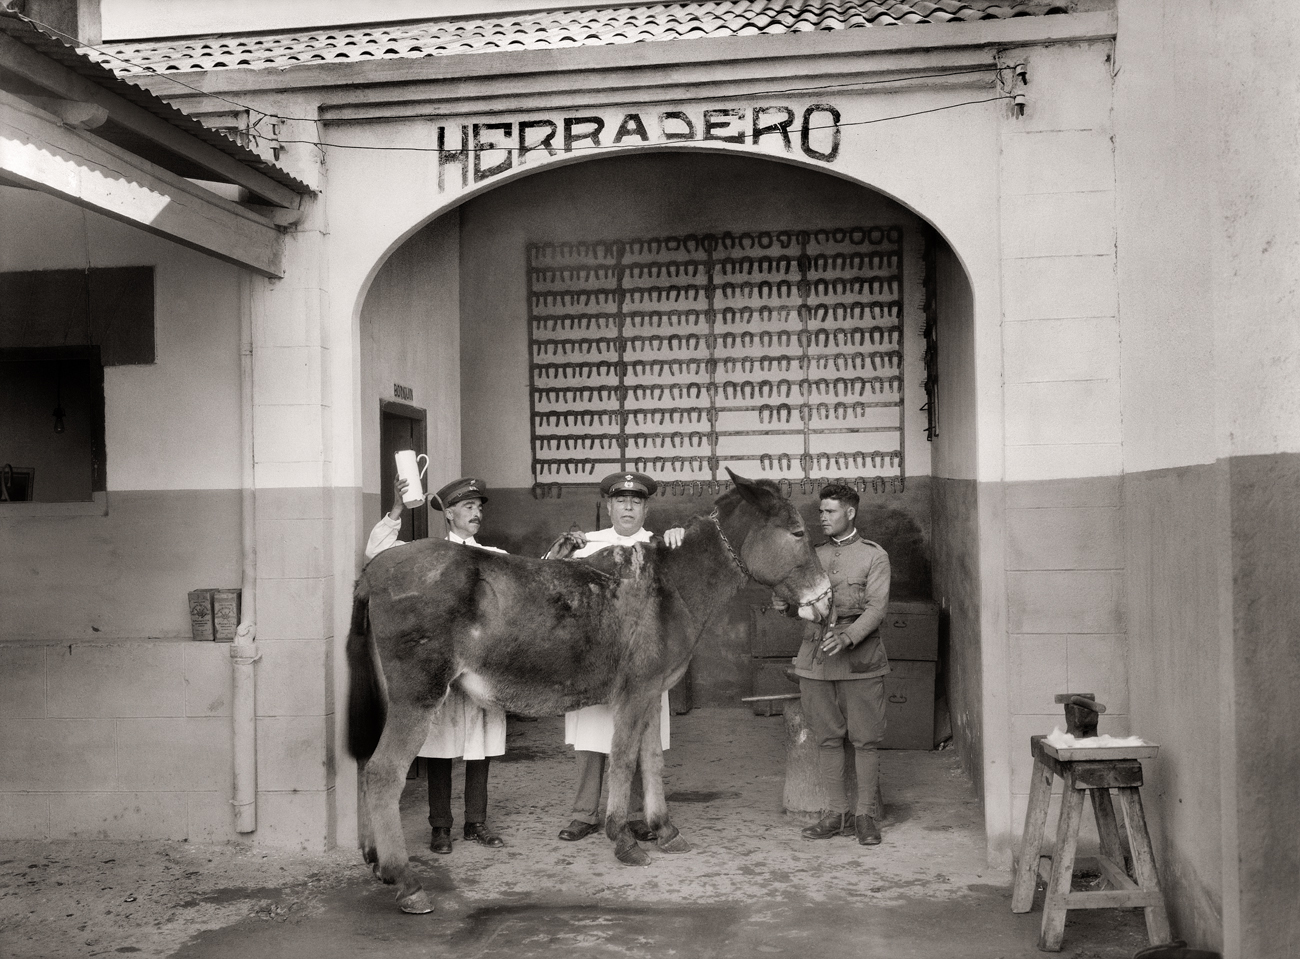 Herradero del Cuartel de Regulares González Tablas. Ceuta, 1929<br/>Gelatina de plata / Silver gelatin